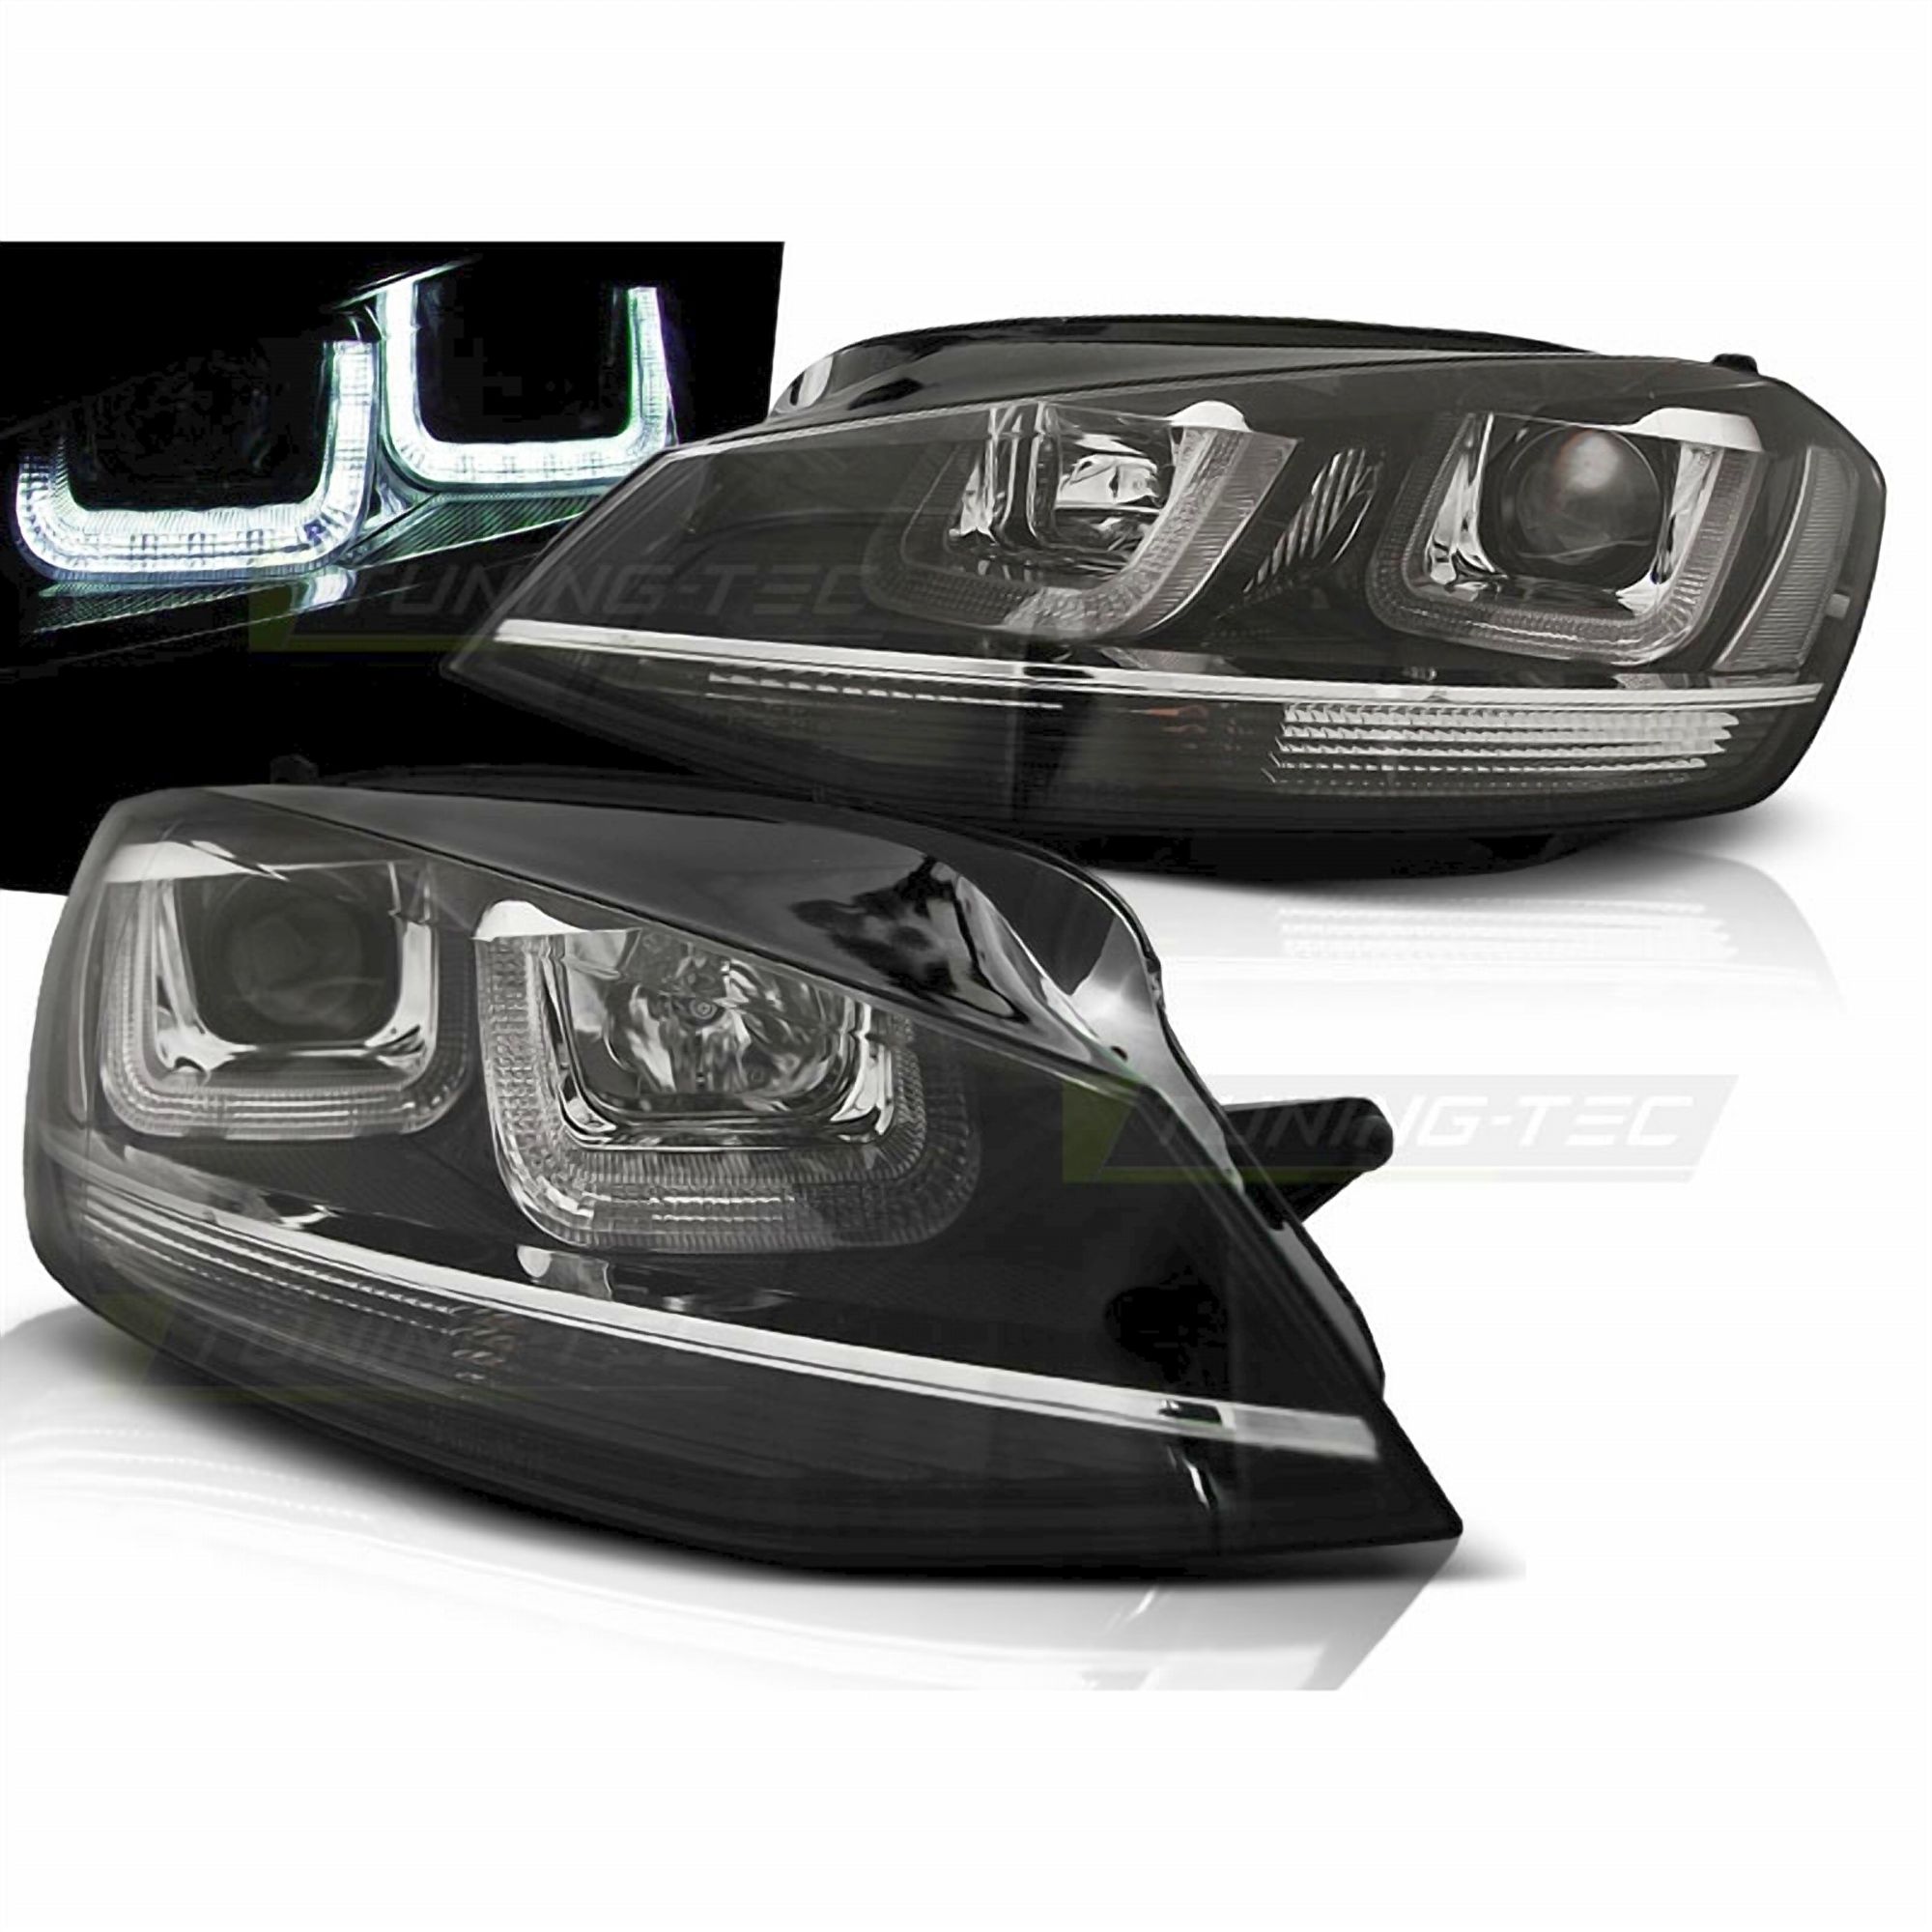 LED chrom Silver Line Tagfahrlicht Scheinwerfer in schwarz für VW Golf 7  VII 11.2012-2017, Für VW Golf 7, Für VW Golf, Für VW, Beleuchtung